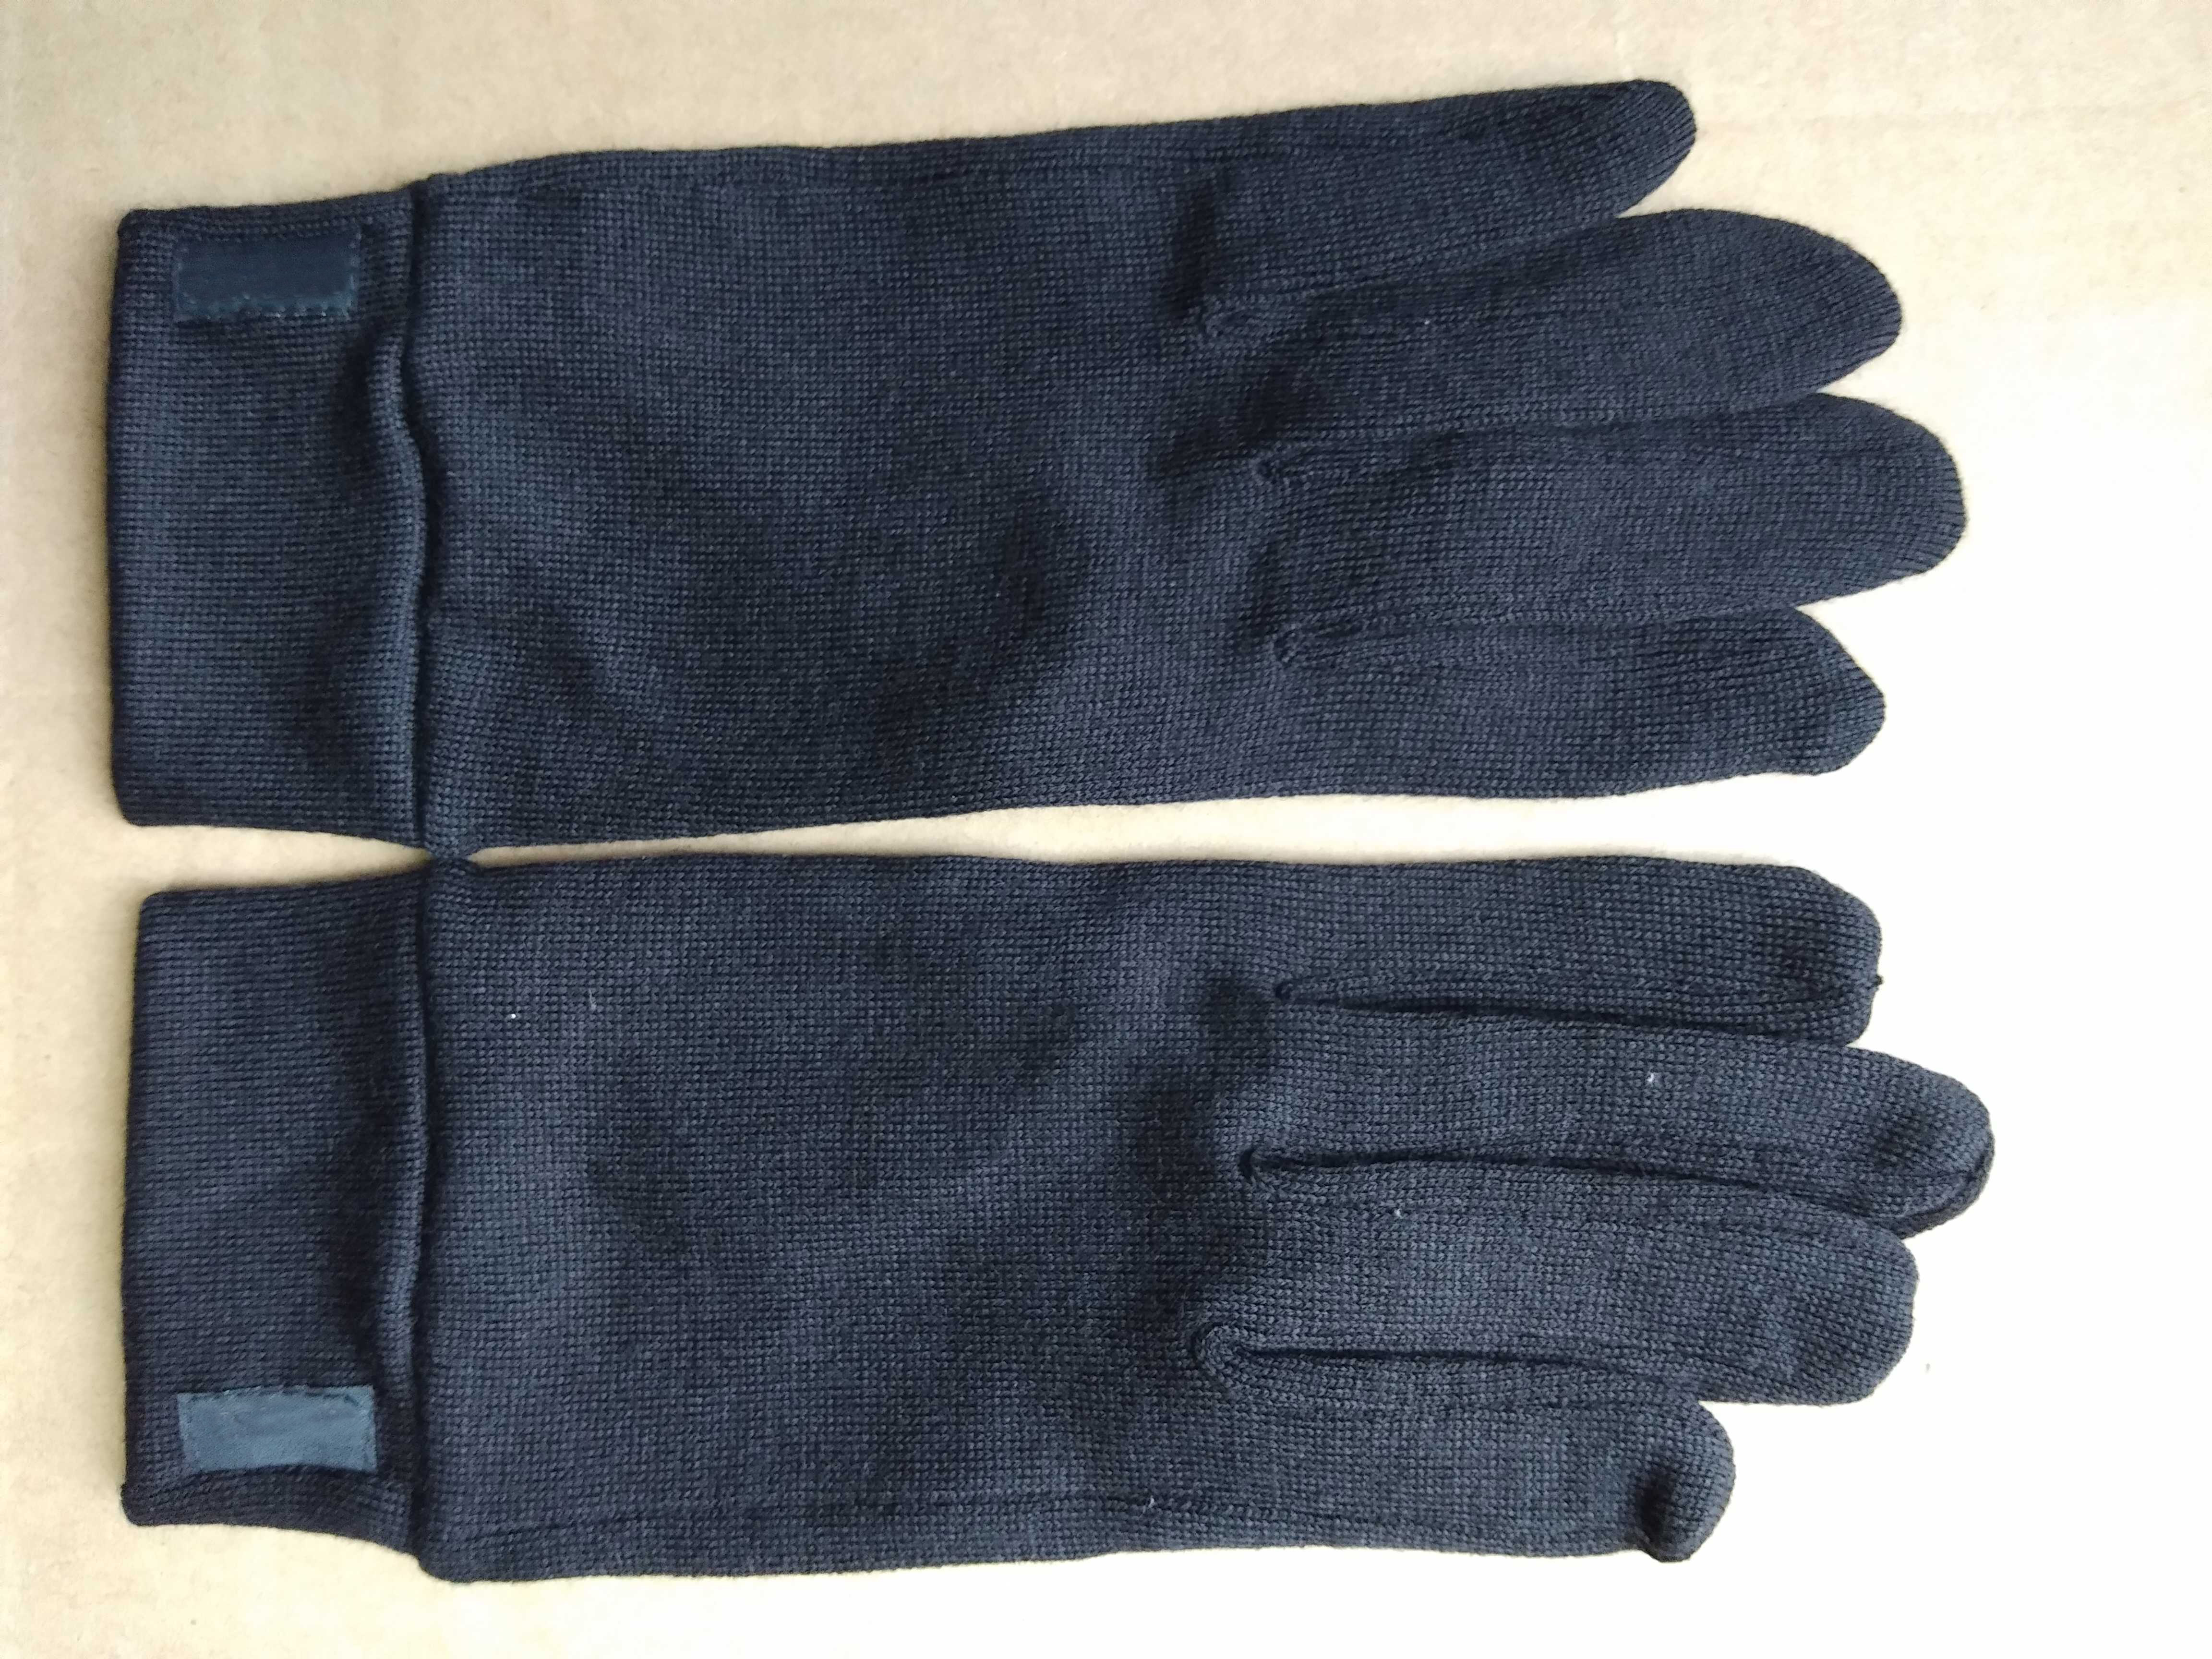 Mænd kvinder merino uld handske liners 100%  merino uld unisex handsker - berøringsskærm kompatibel varmere vindtæt størrelse xs-xl